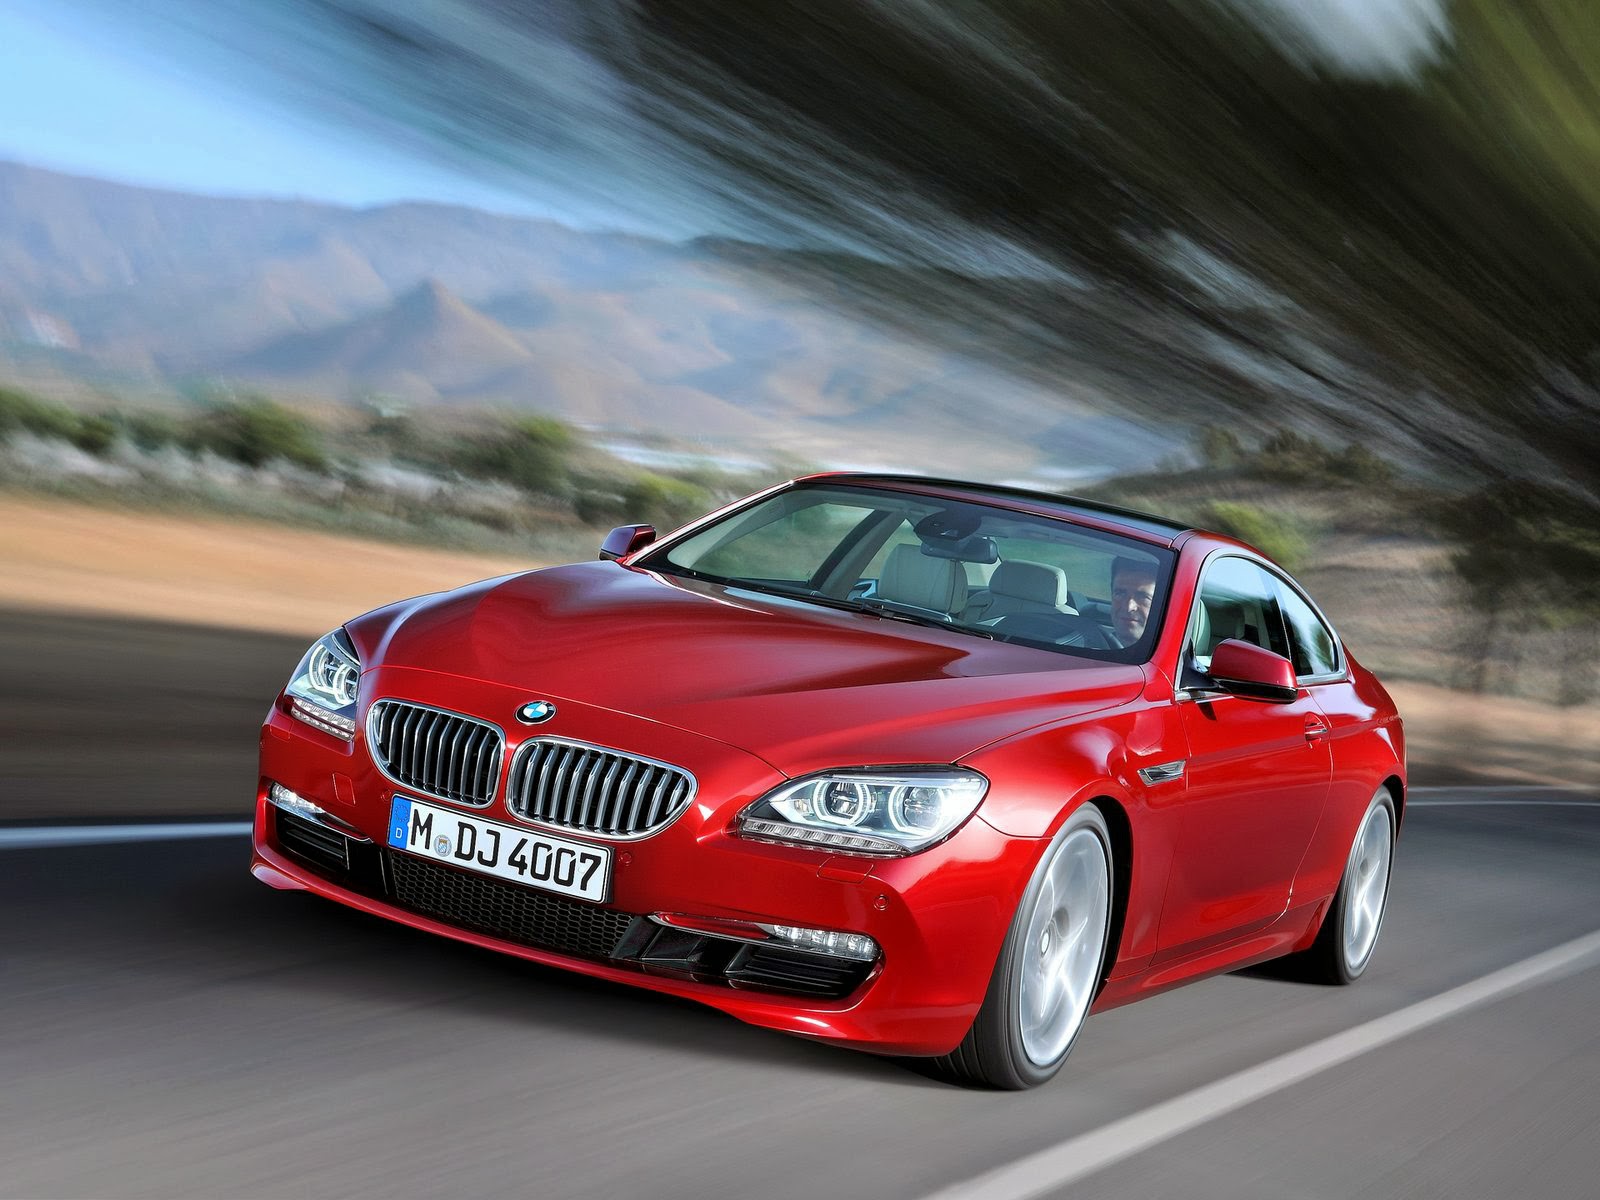  Gambar  gambar mobil BMW  Terbaru 2014 Sport dan Mewah Informasi seputar Modifikasi Otomotif 